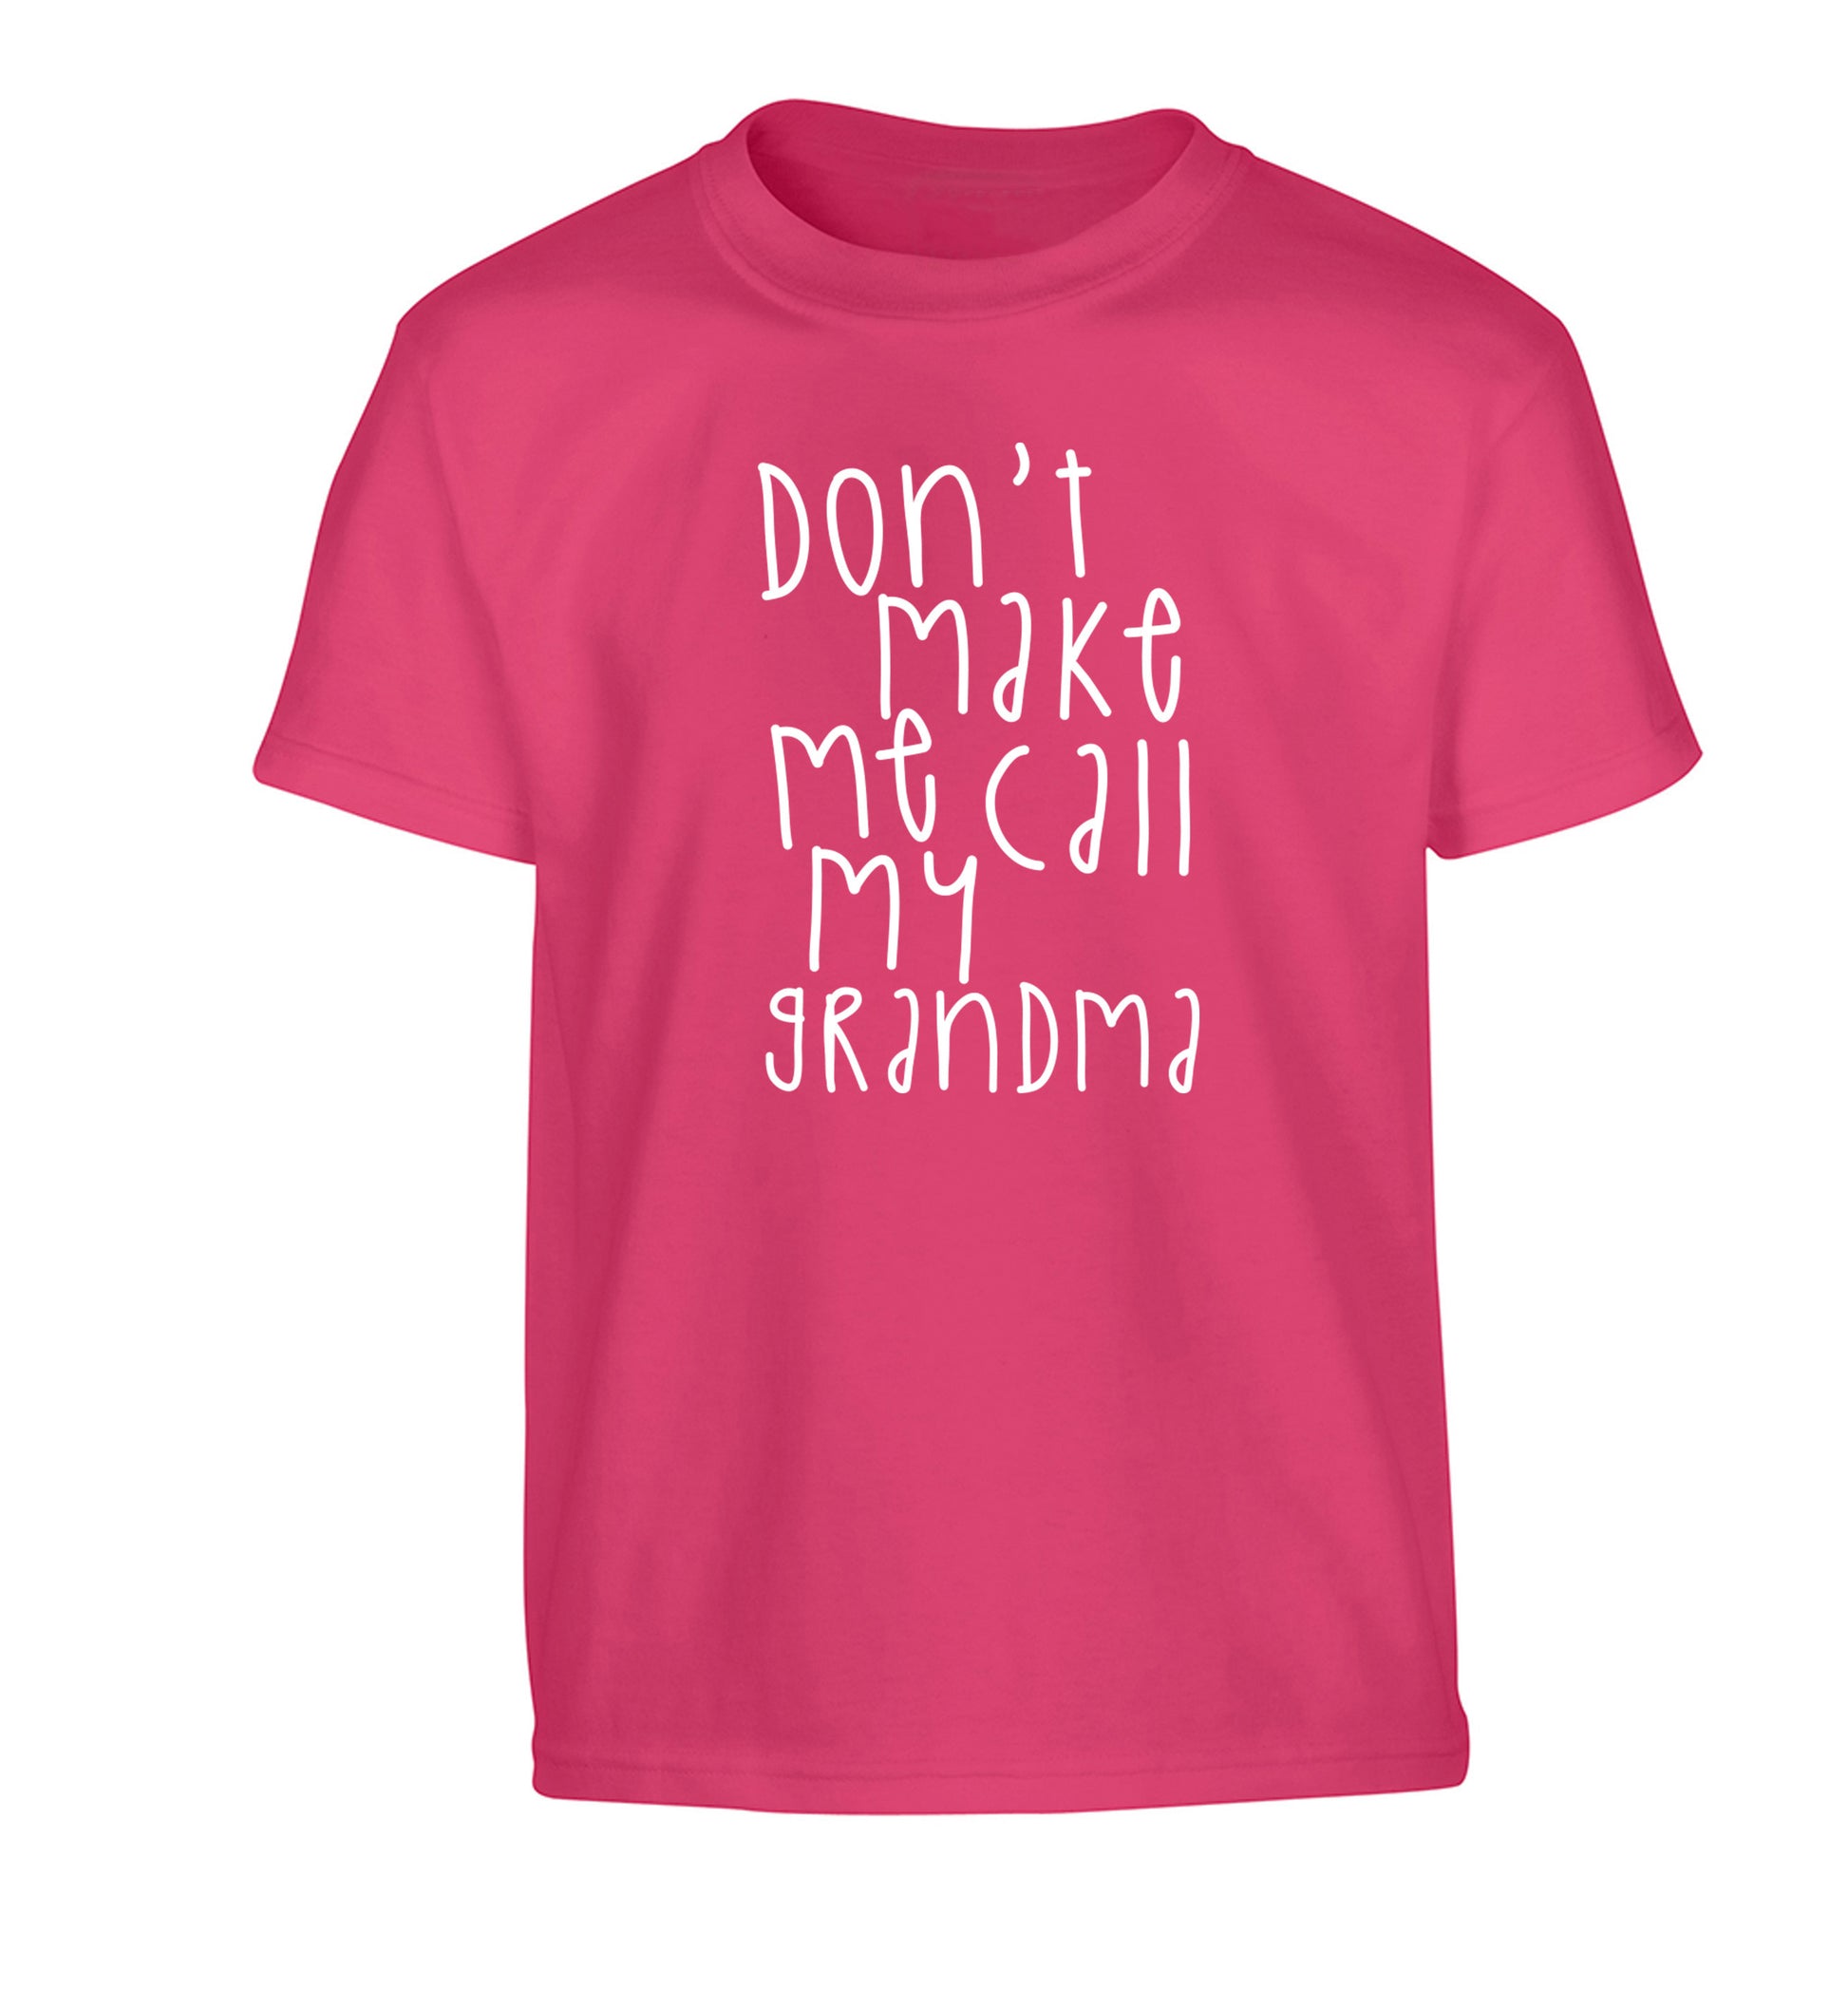 Don't make me call my grandma Children's pink Tshirt 12-14 Years